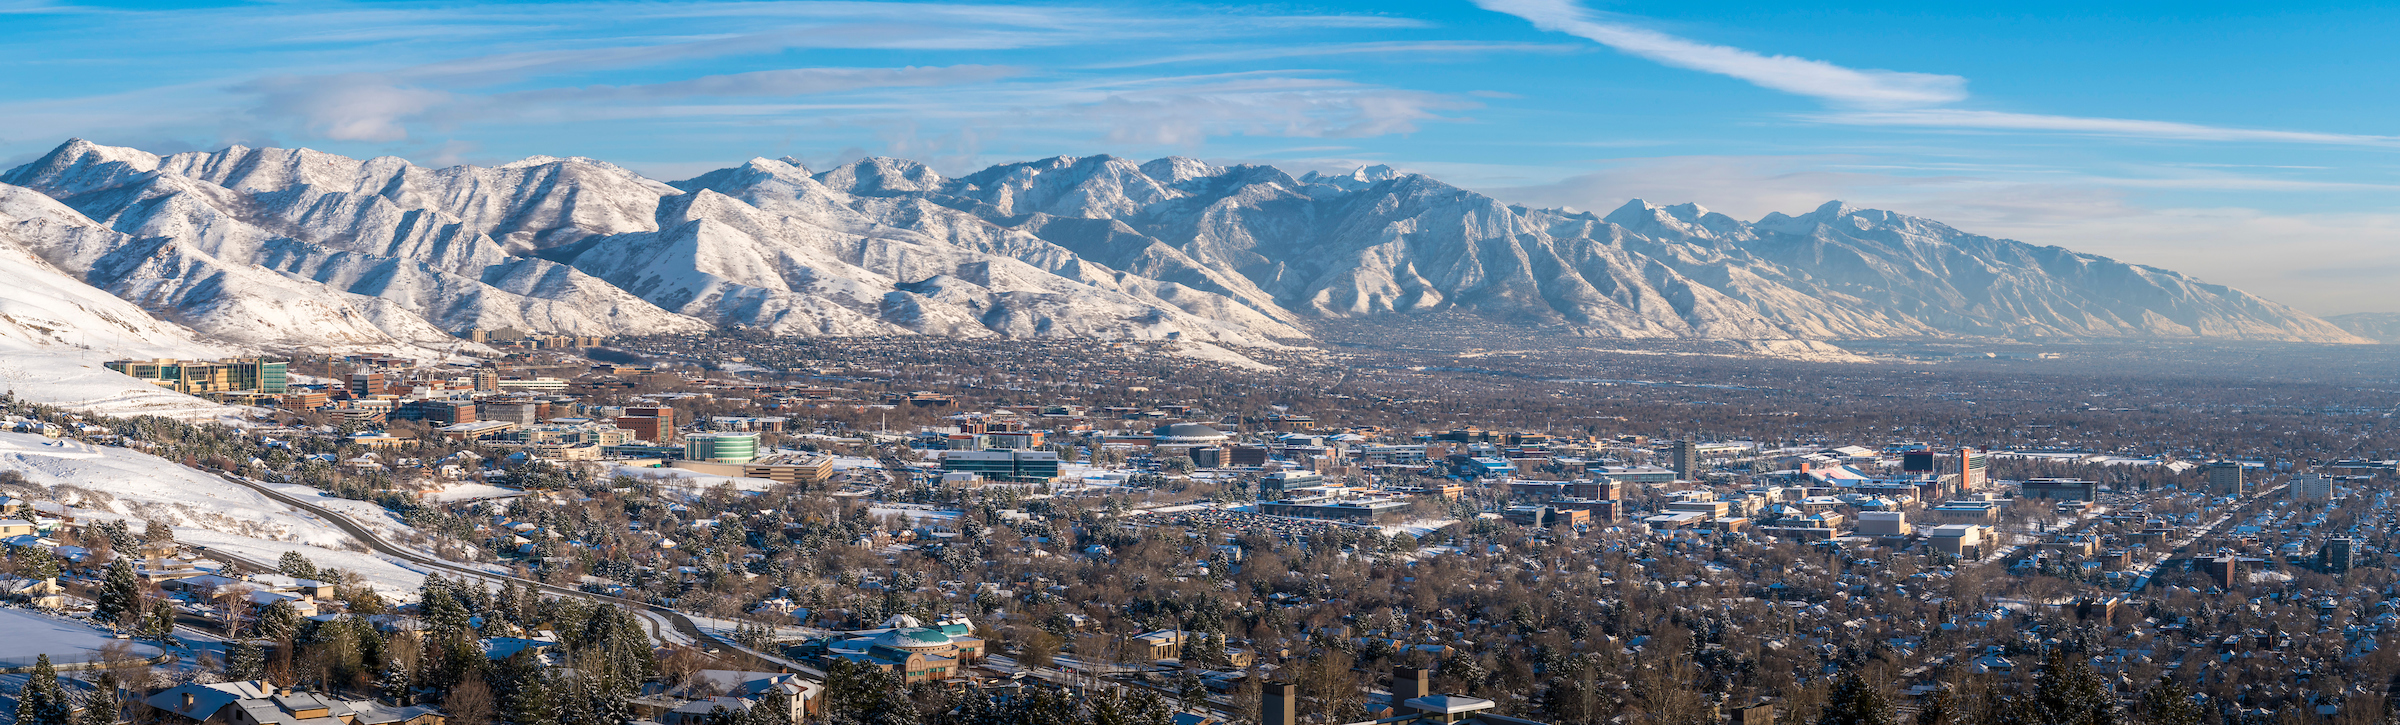 Utah Campus winter